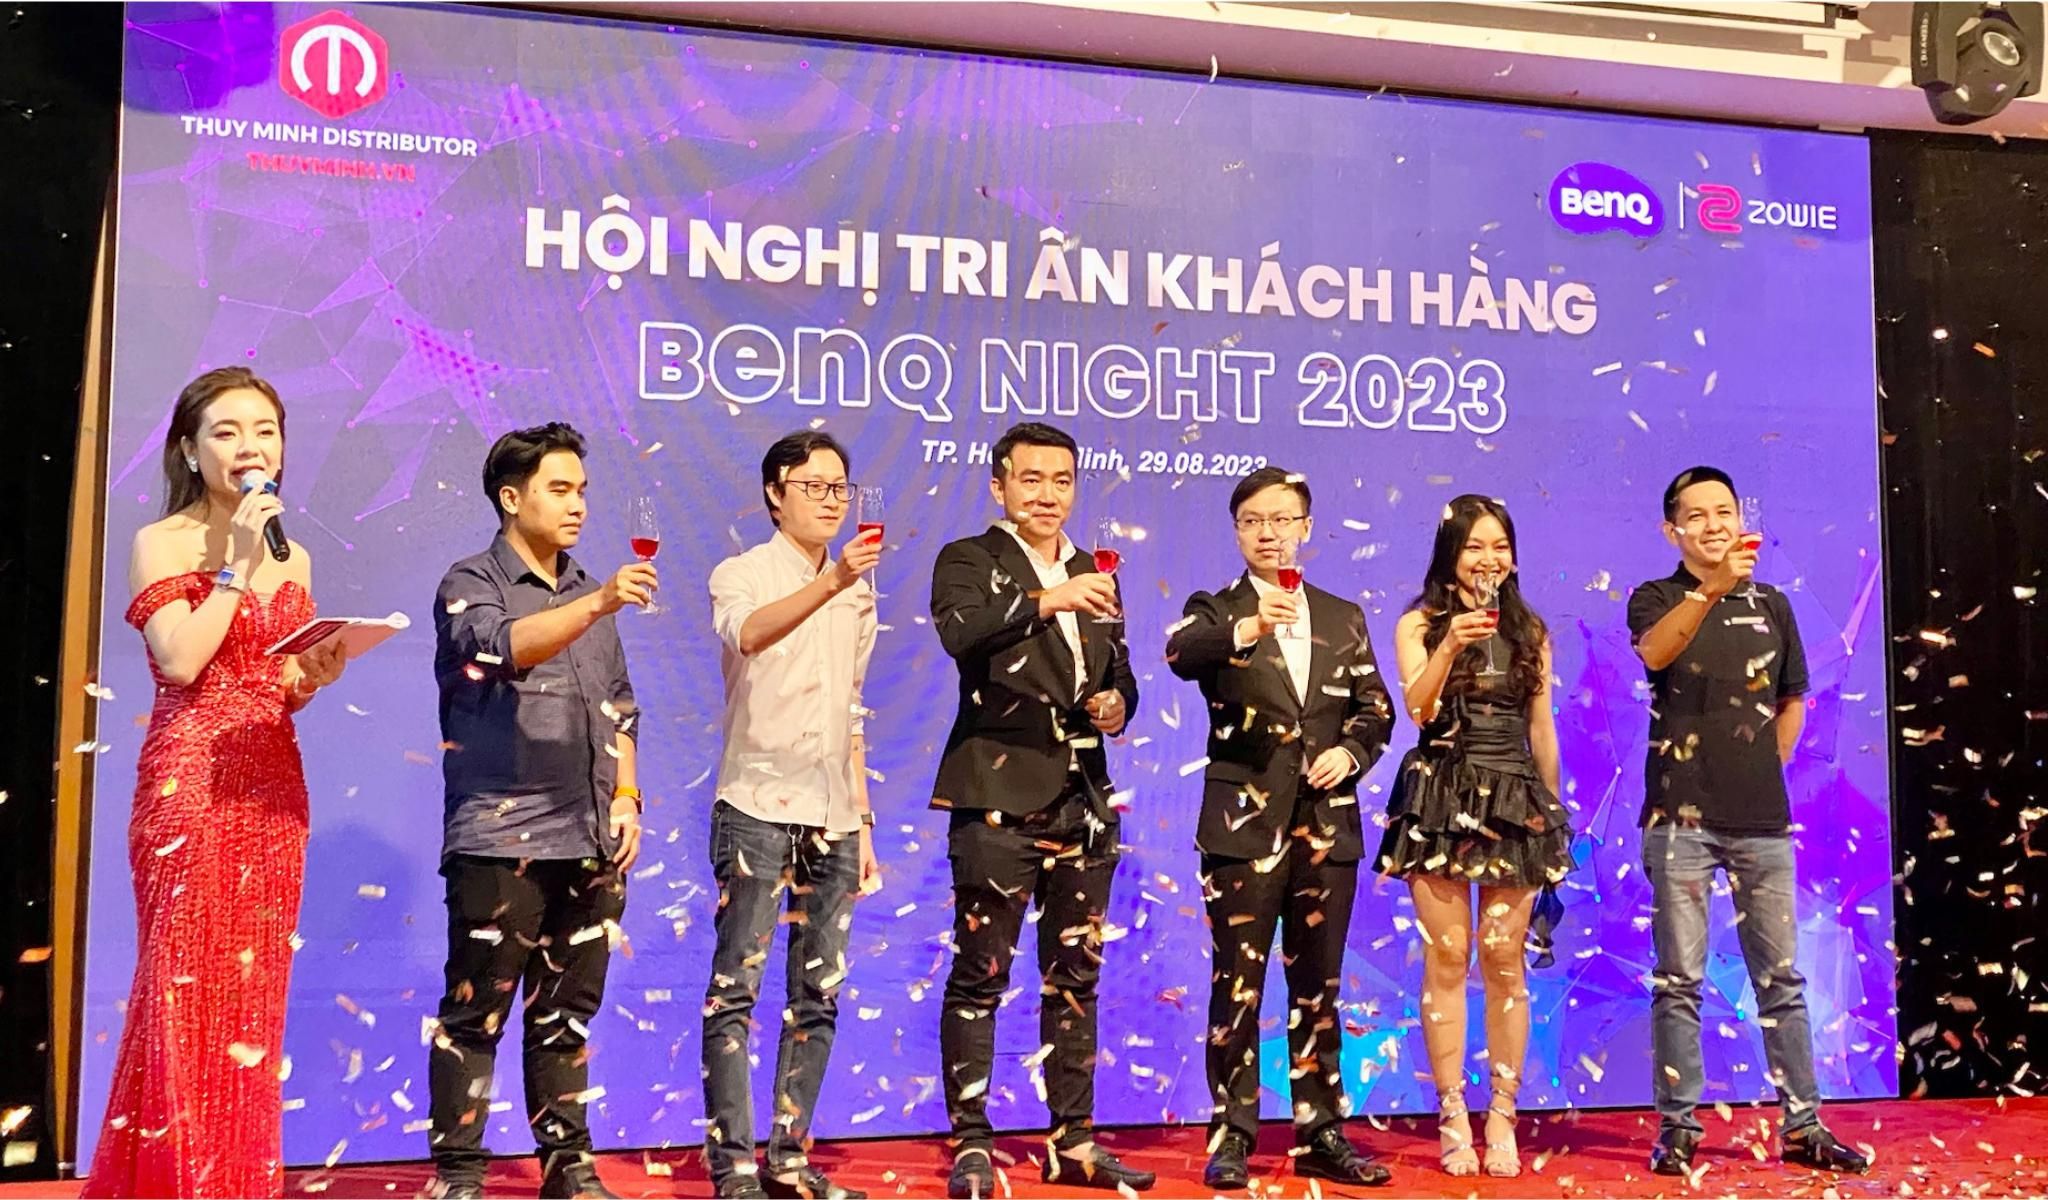 BenQ Night 2023: Thùy Minh tung chính sách bán hàng ưu đãi cho đại lý